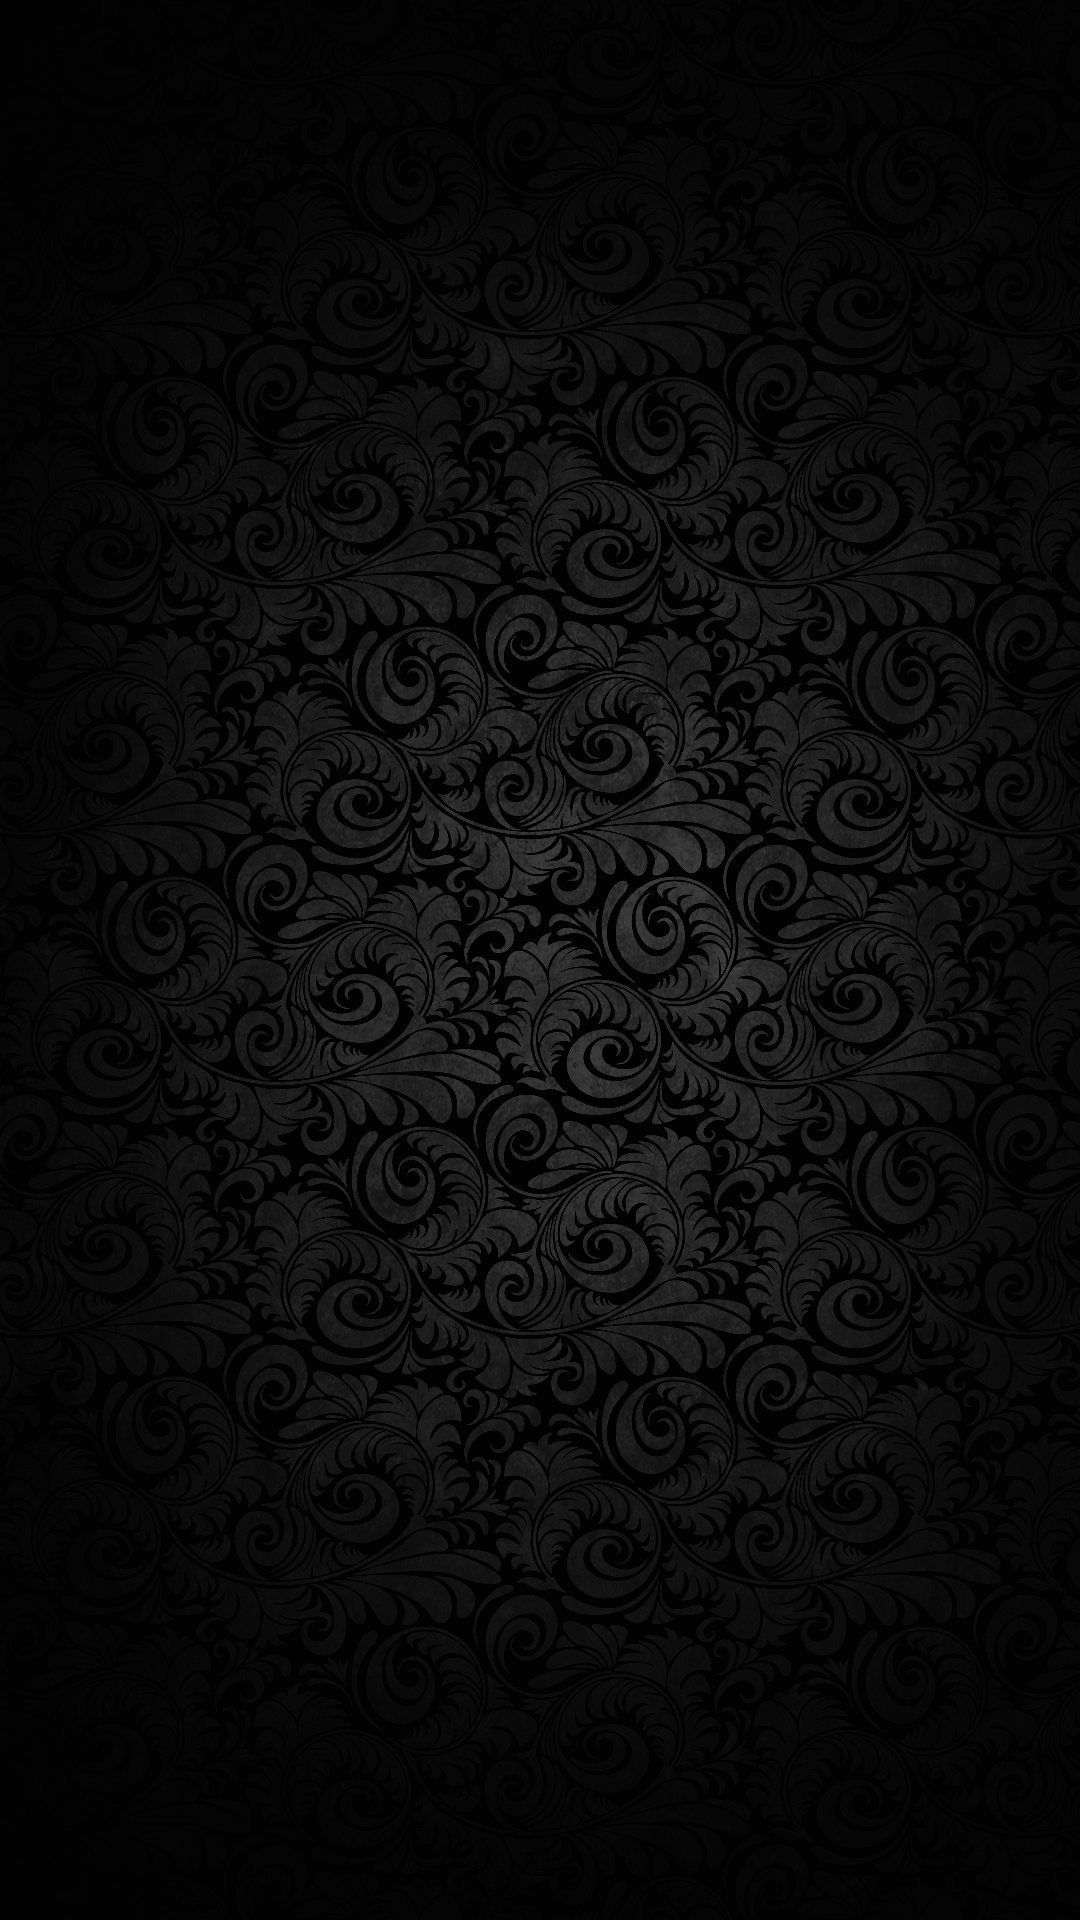 Wallpaper Full Hd 1080 X 1920 Smartphone Dark Elegant - 1080 x ...